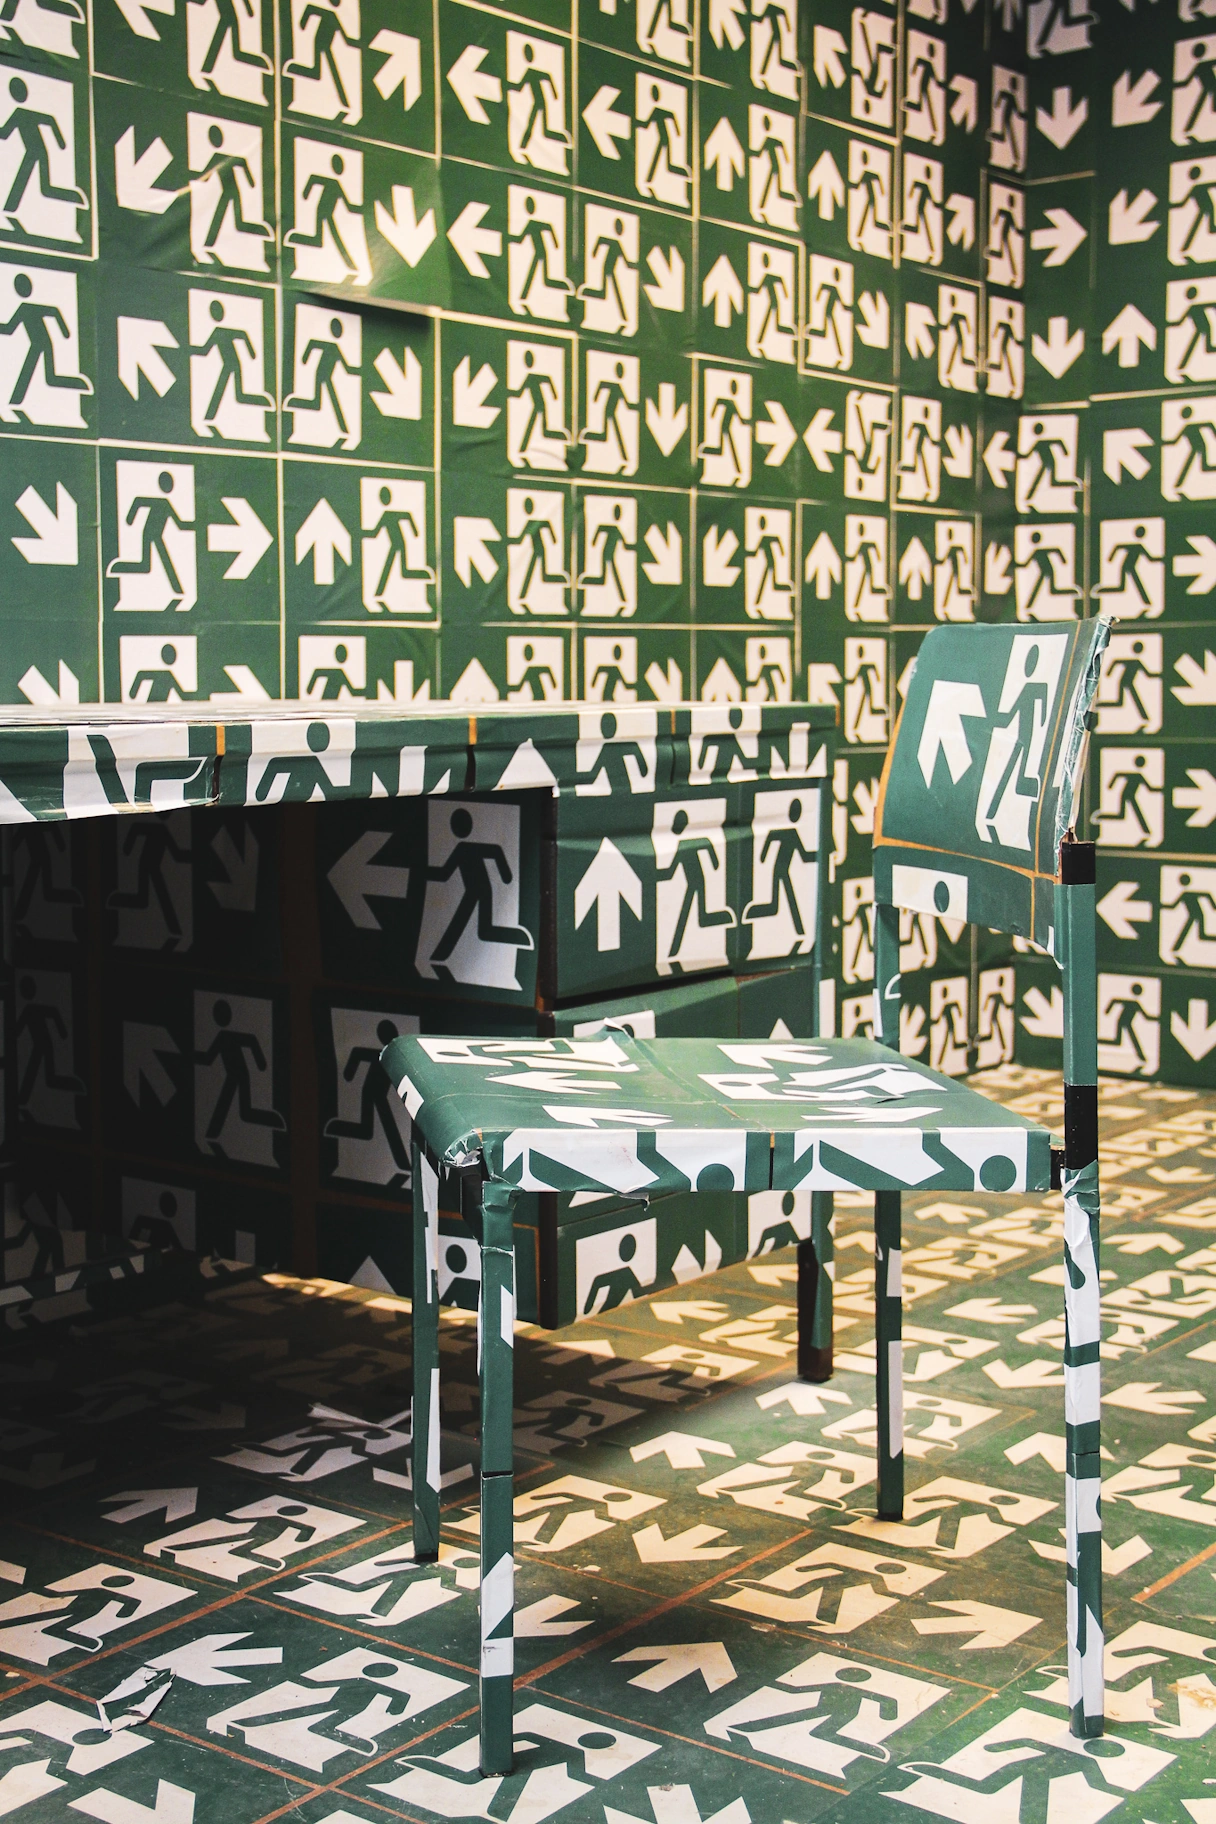 Ein Raum im Kunstlabor mit einem Tisch und einem Stuhl. Beides ist inklusive Wand und Boden mit hunderten Notausgangschildern beklebt